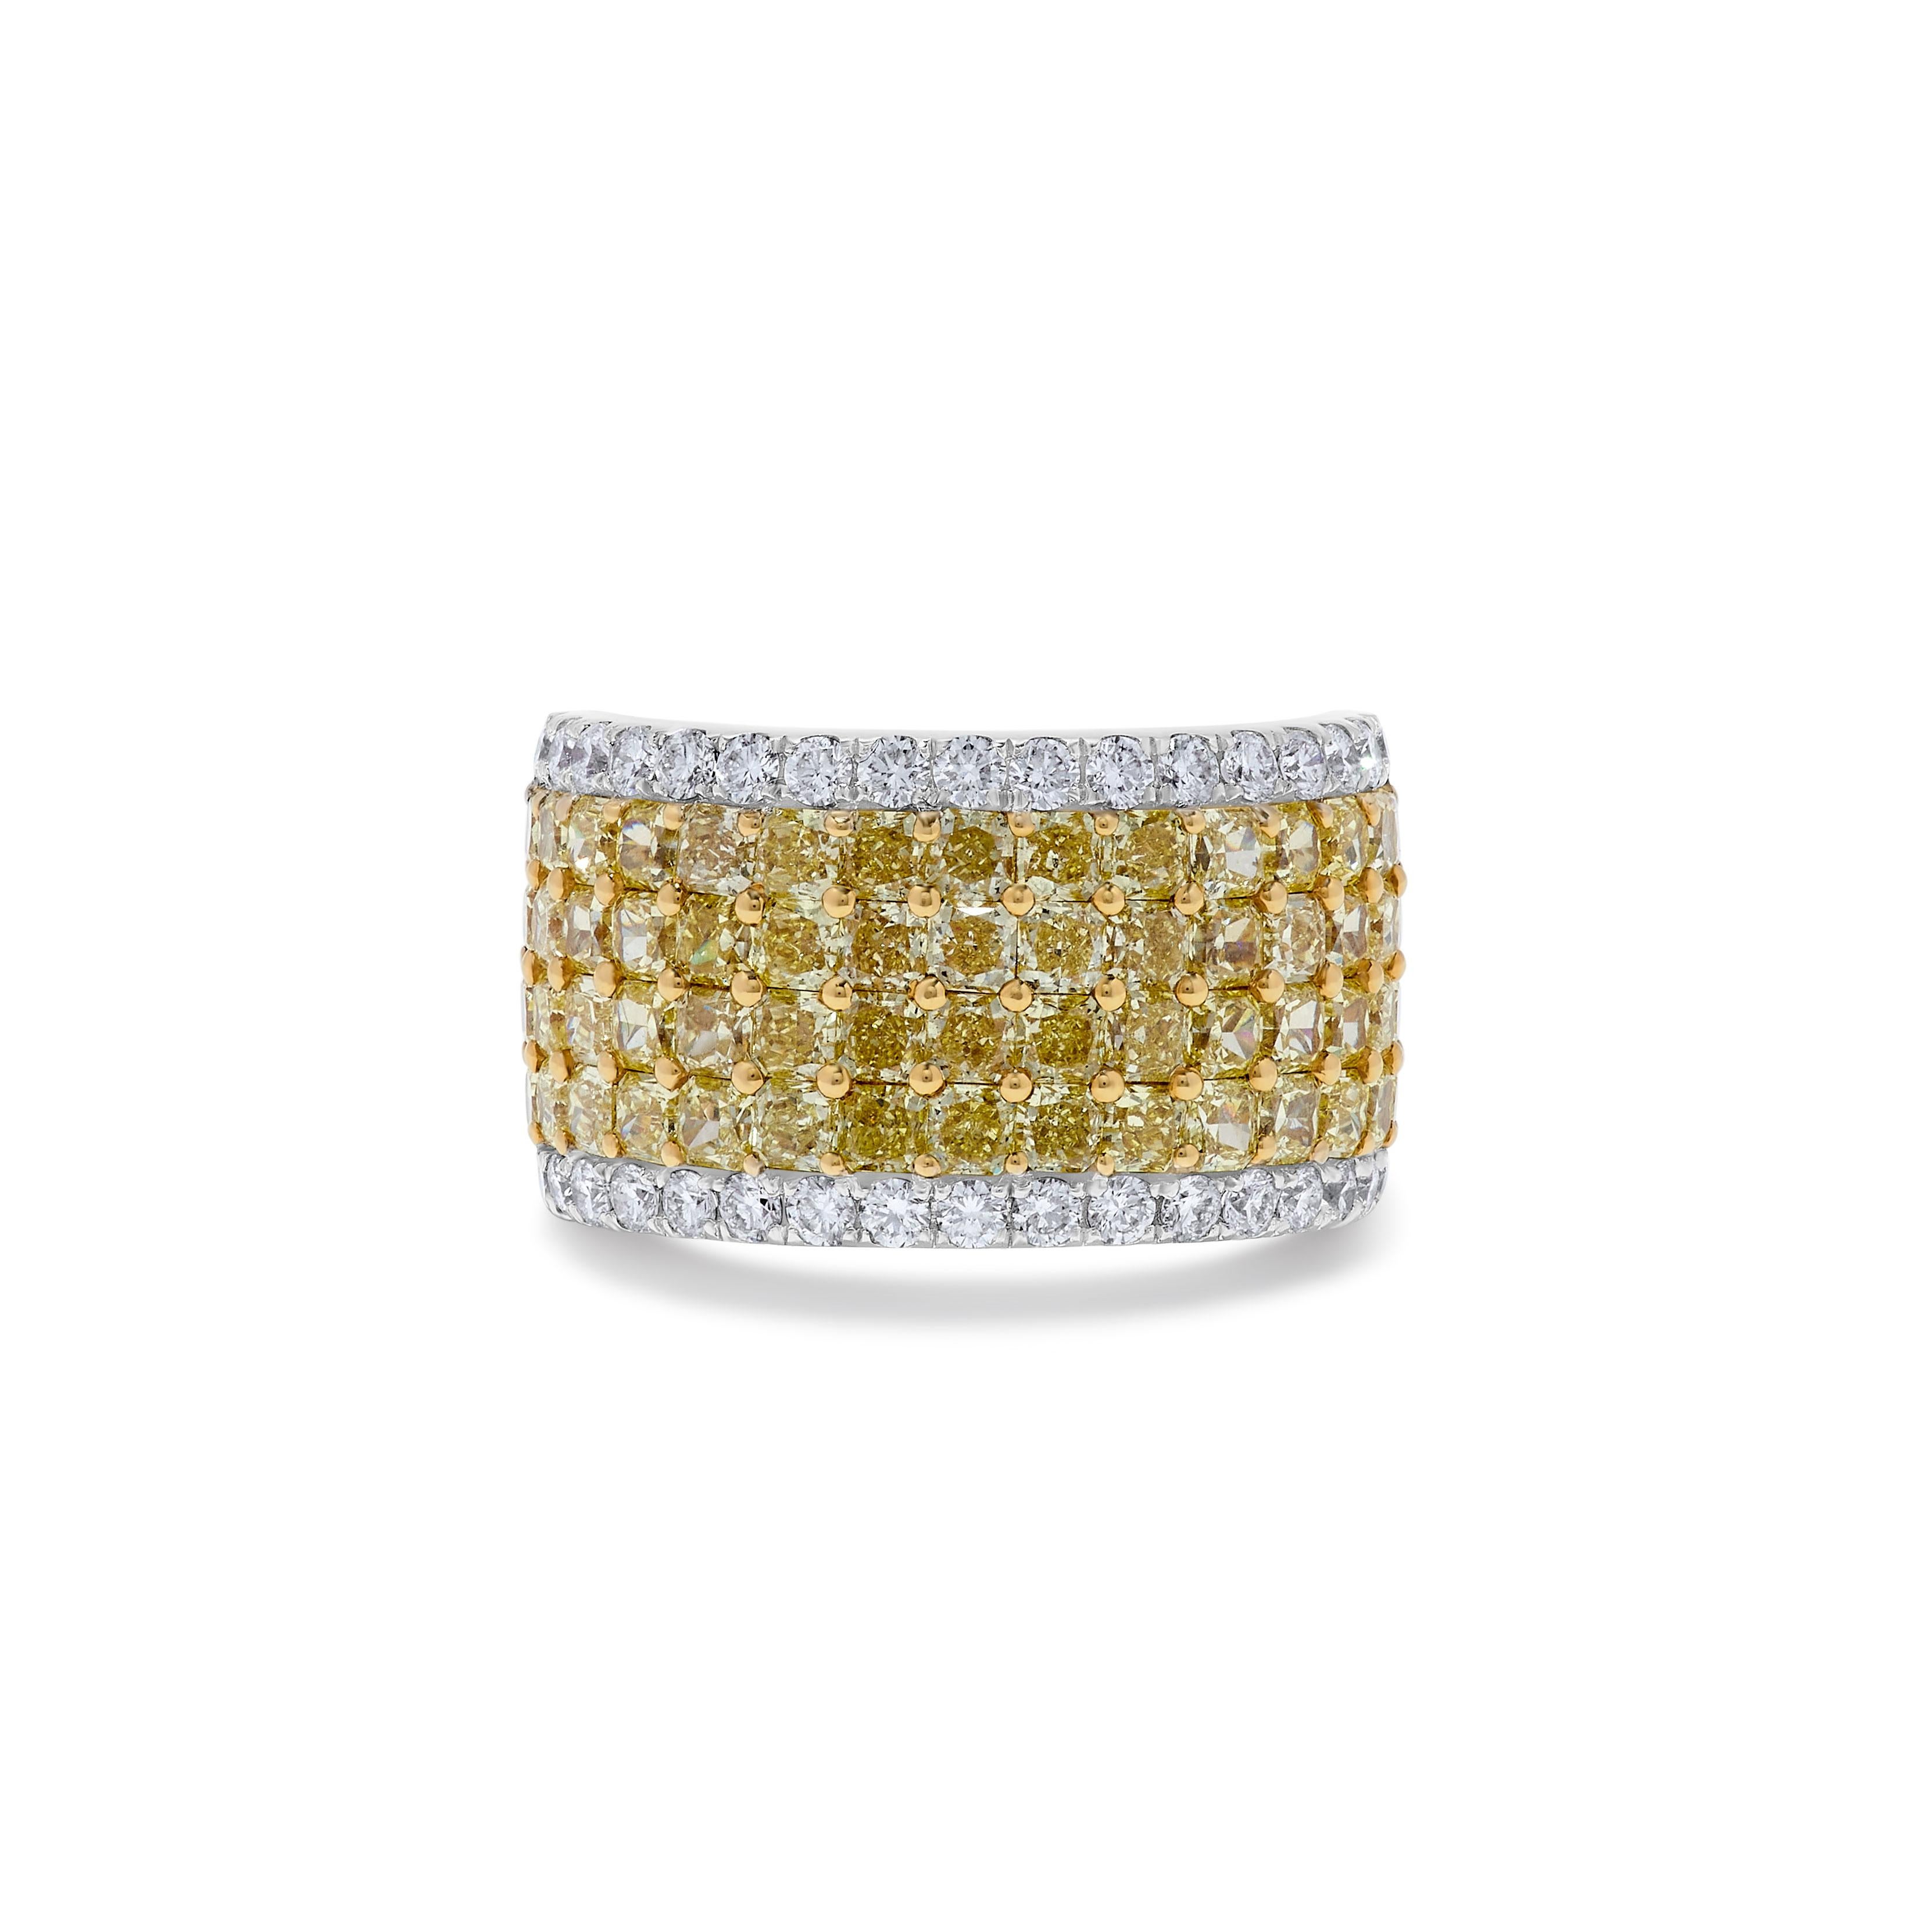 Das klassische Diamantband von RareGemWorld. Eingefasst in eine wunderschöne Fassung aus 18 Karat Gelb- und Weißgold mit gelben Diamanten im natürlichen Strahlenschliff und weißen Diamanten im natürlichen Rundschliff. Dieses Band wird Sie garantiert